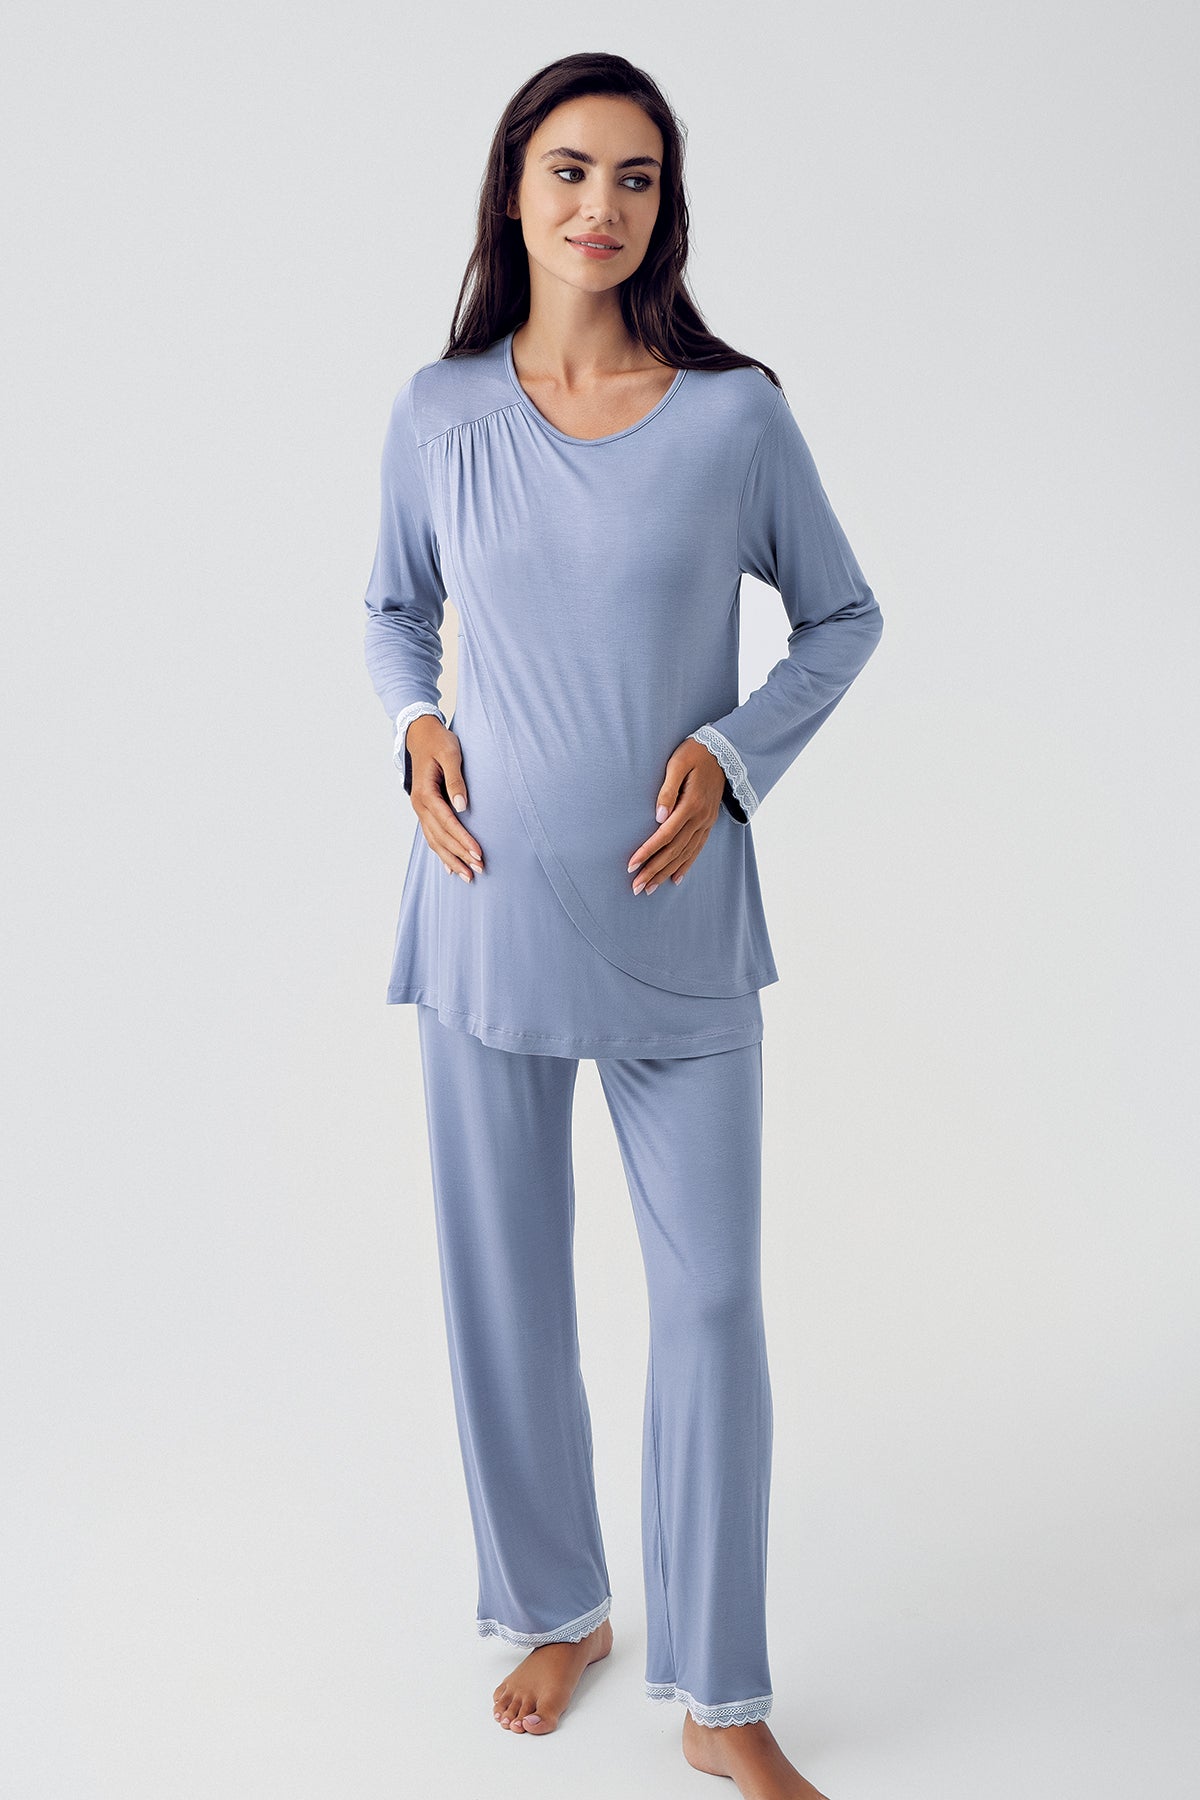 Shopymommy 15209 Wide Double Breasted Maternity & Nursing Pajamas Indigo